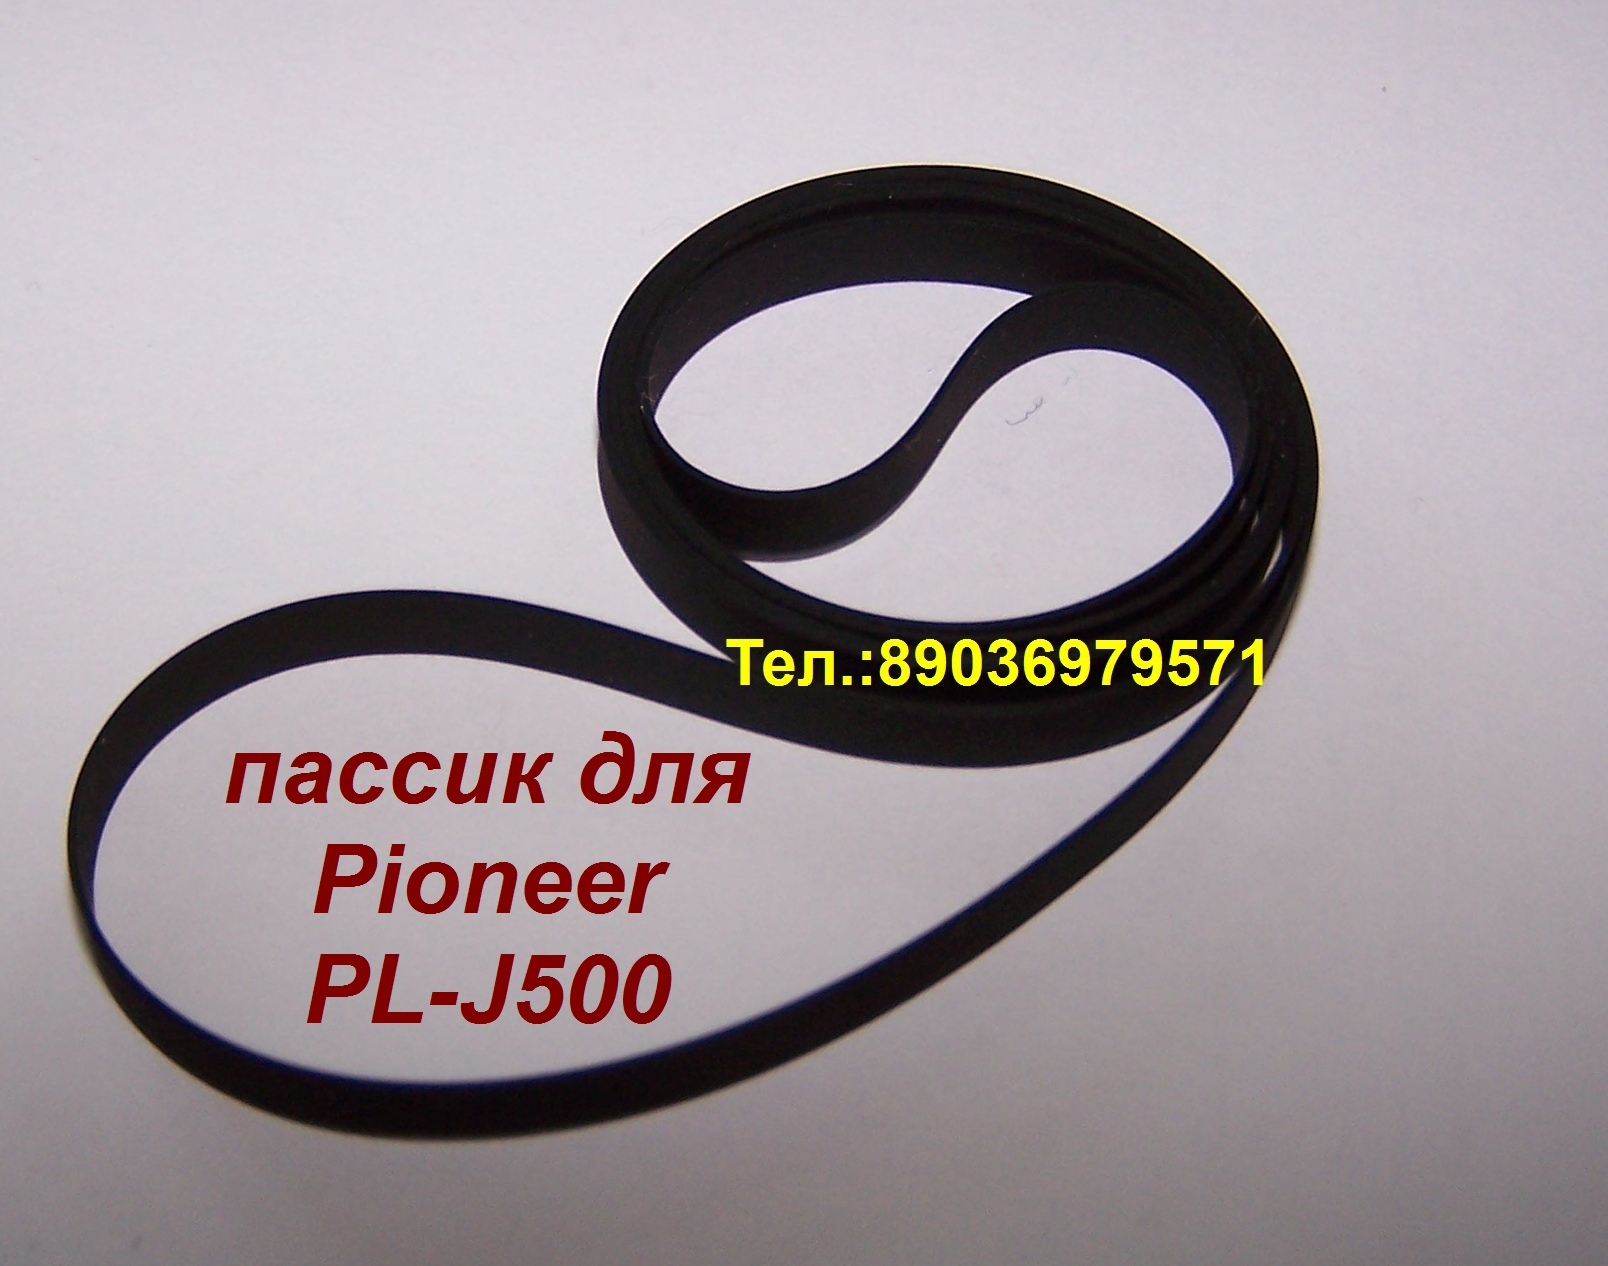 новый пассик для Pioneer PL-J500 головка игла в городе Москва, фото 1, телефон продавца: +7 (903) 697-95-71